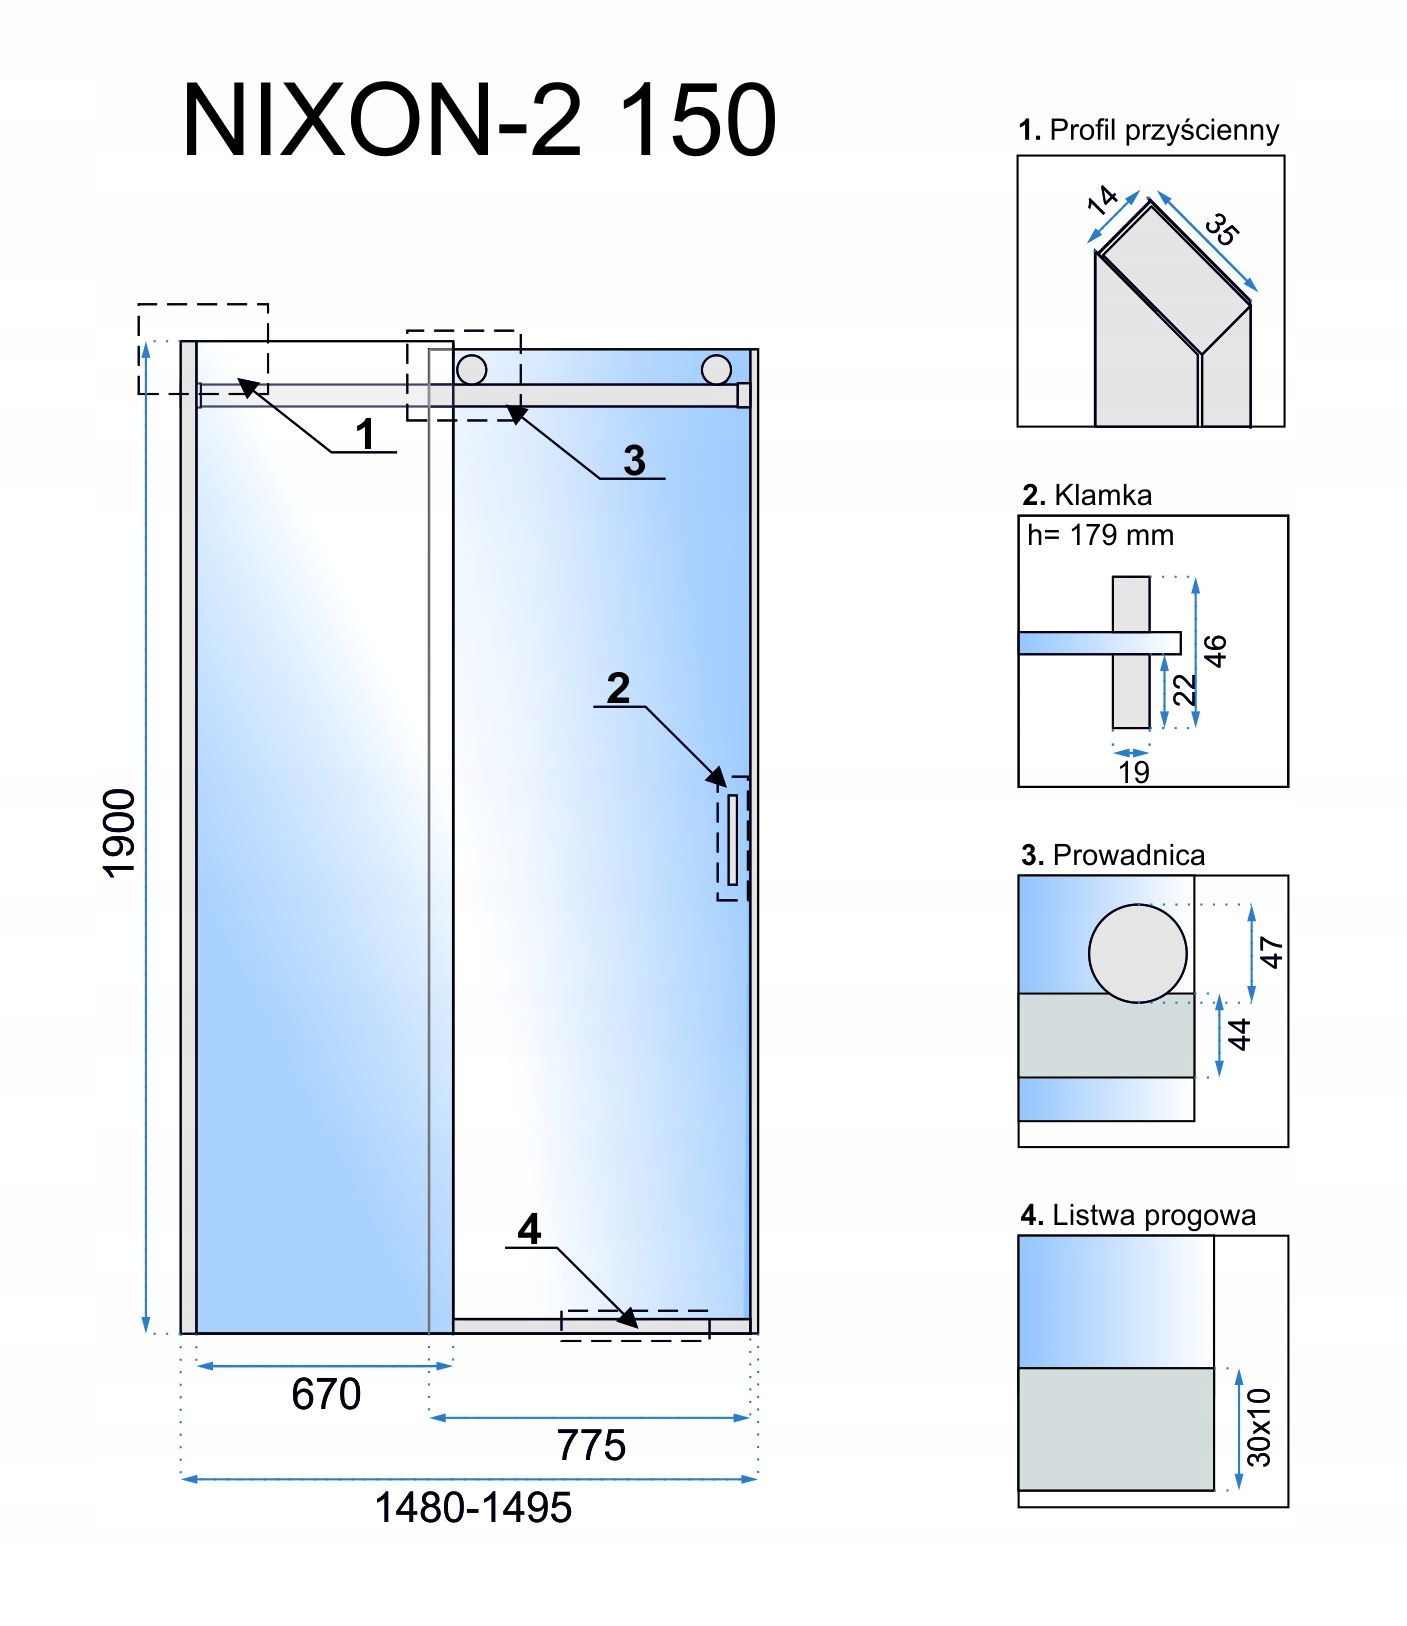 Sprchové dveře posuvné 8 mm Nixon 150 Pravé Hmotnost produktu s jednotkovým balením 51 kg